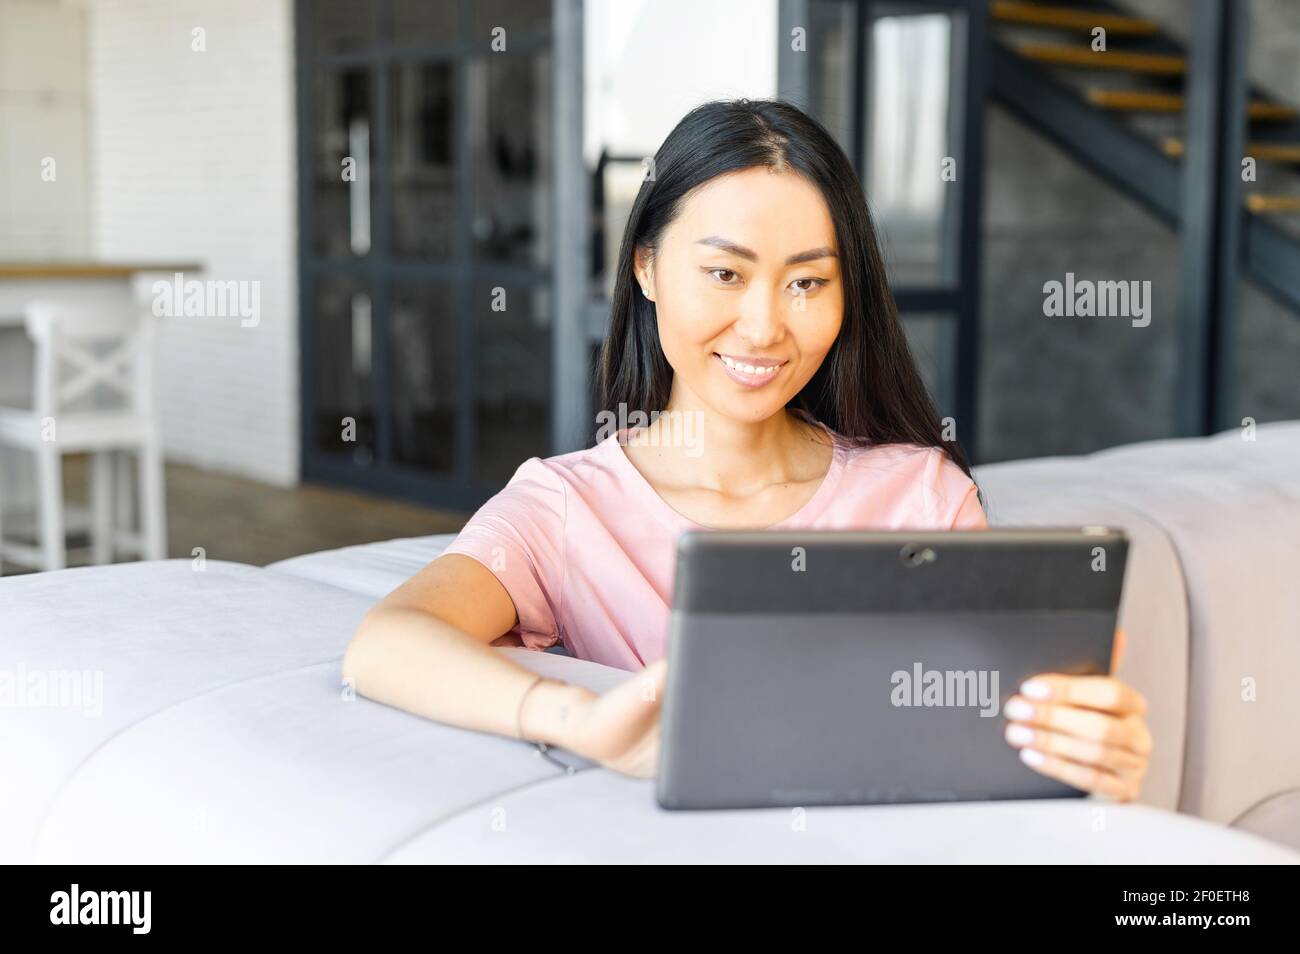 Fröhliche junge gut aussehende asiatische Frau verbringt Freizeit mit einem digitalen Tablet zu Hause, eine Frau schaut Filme, chatten in sozialen Netzwerken Stockfoto